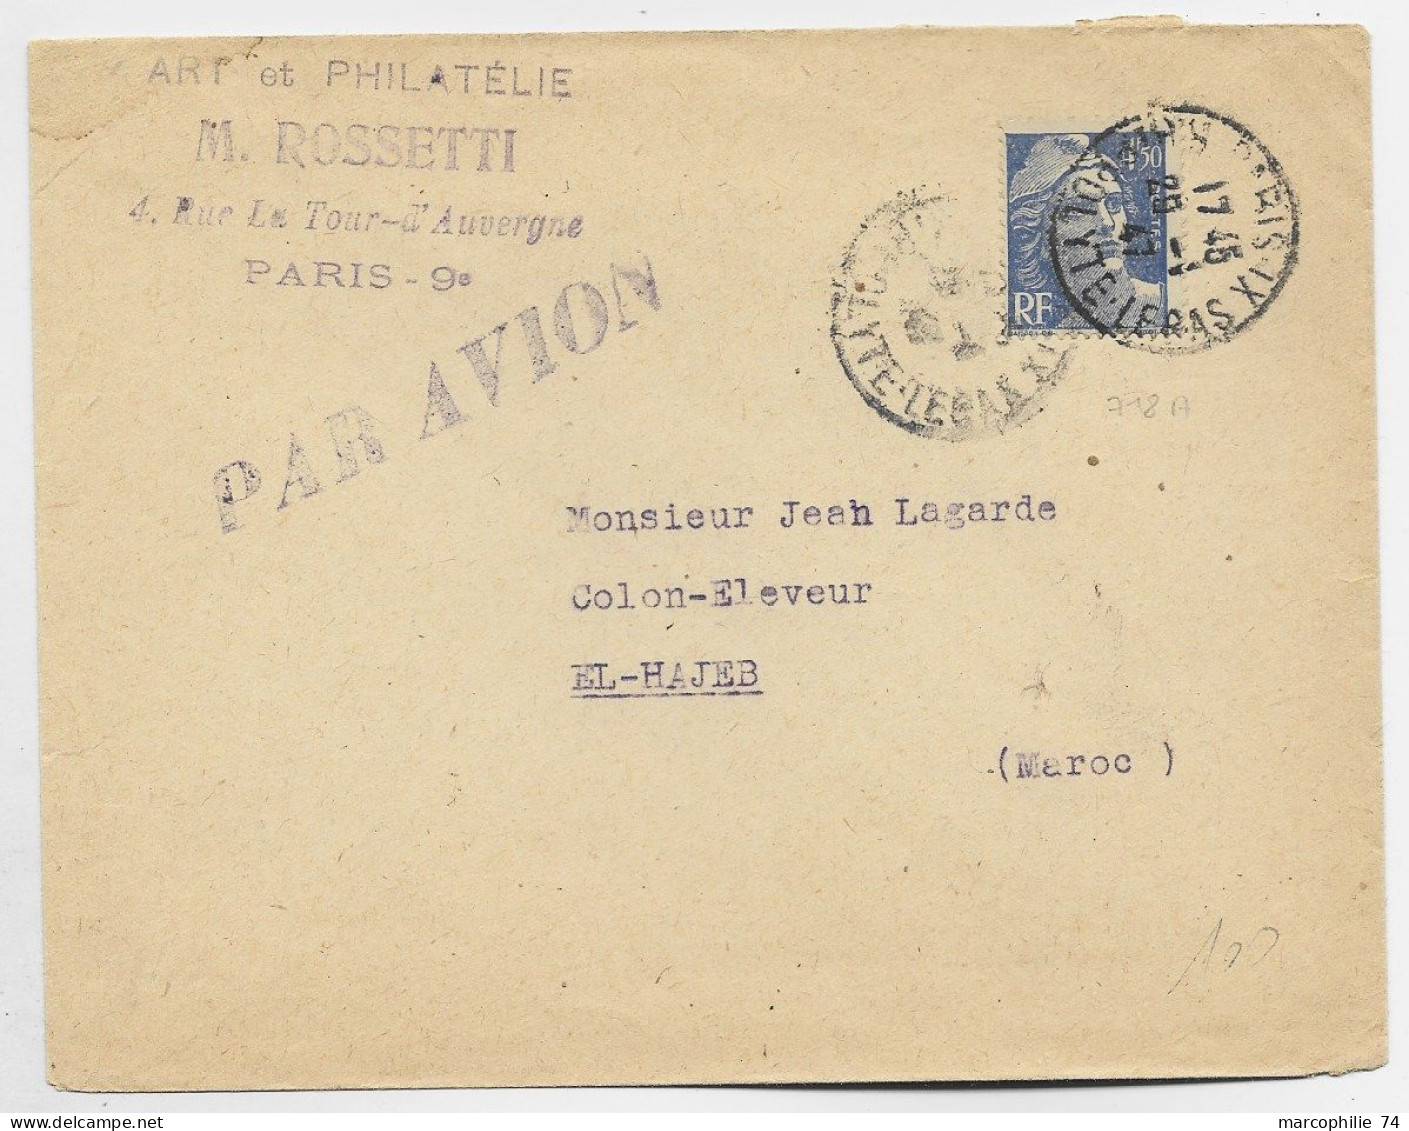 GANDON 4FR50 SEUL LETTRE AVION PARIS IX 1947 POUR LE MAROC AU TARIF - 1945-54 Marianne De Gandon